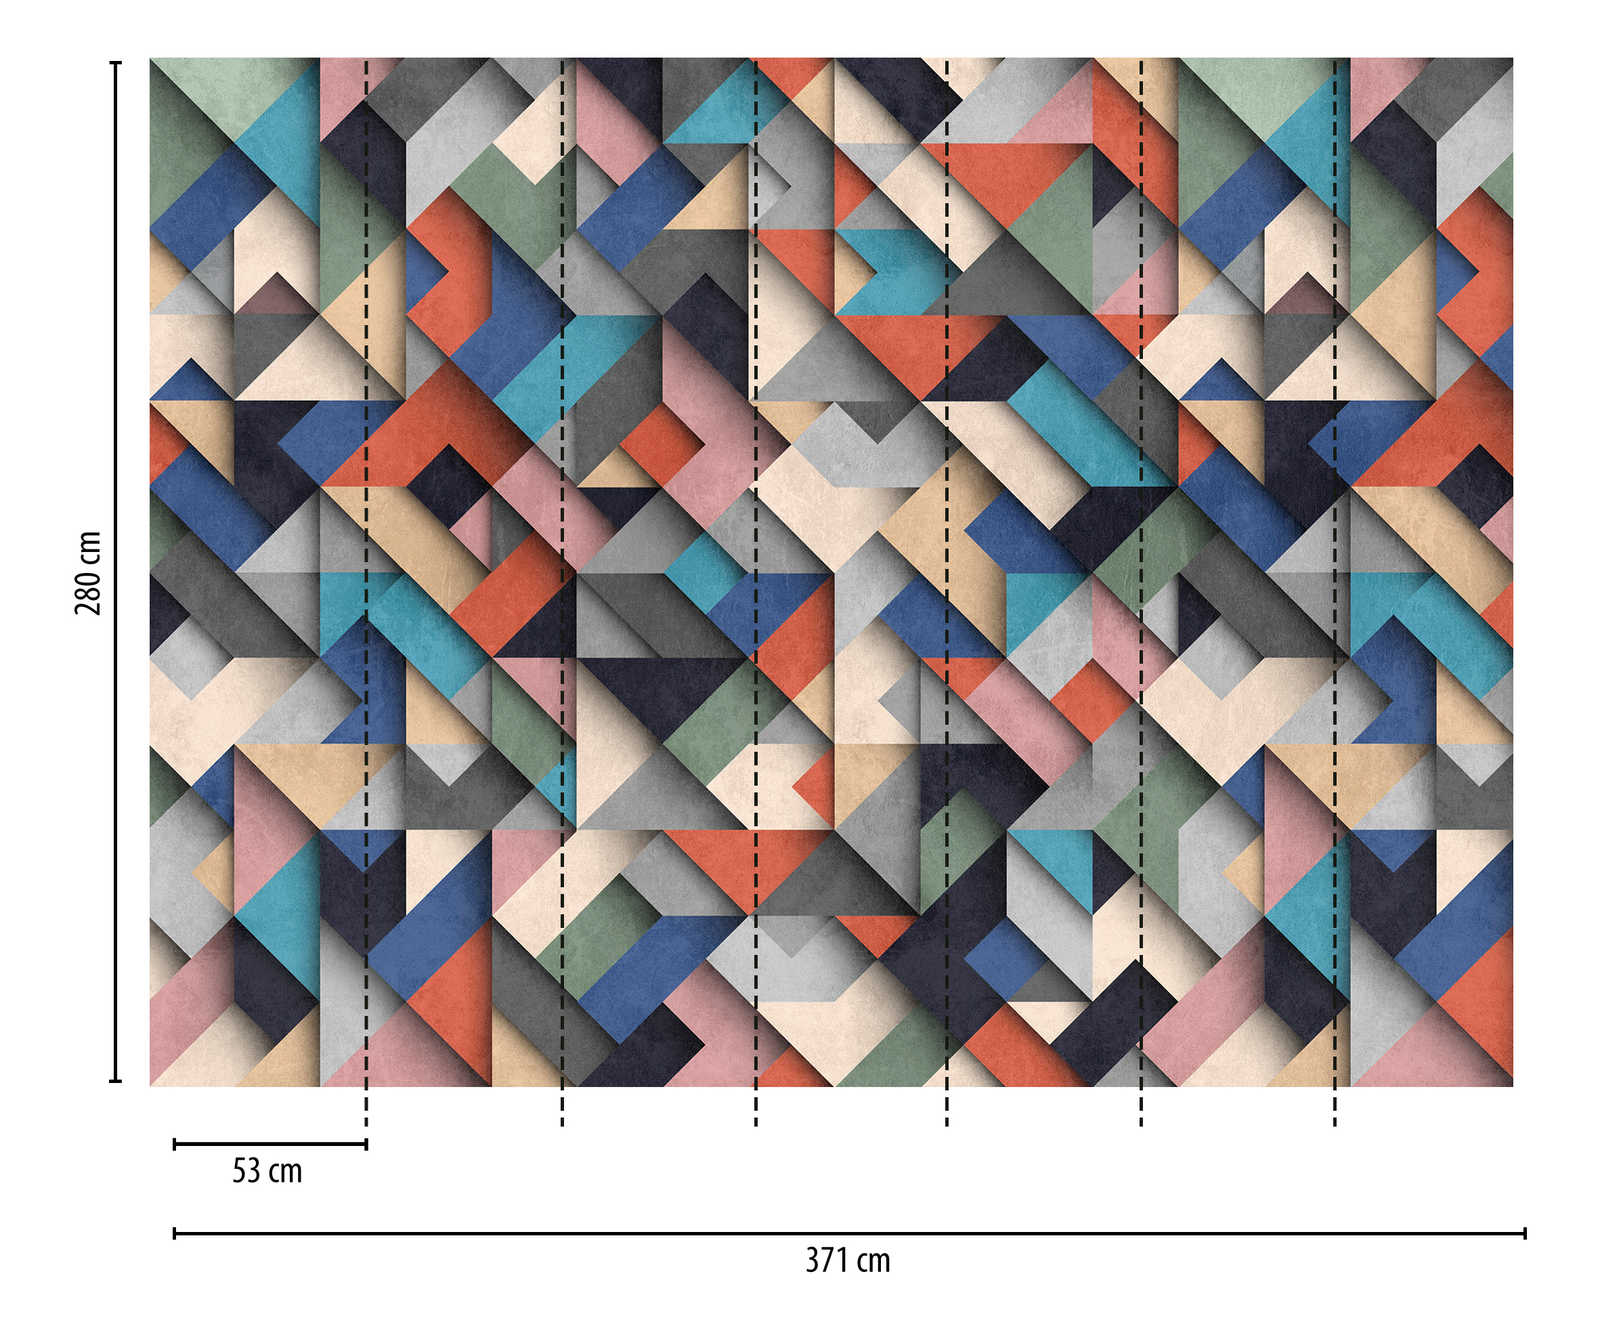             Behang noviteit | 3D motief behang met geometrisch kleurblok design
        